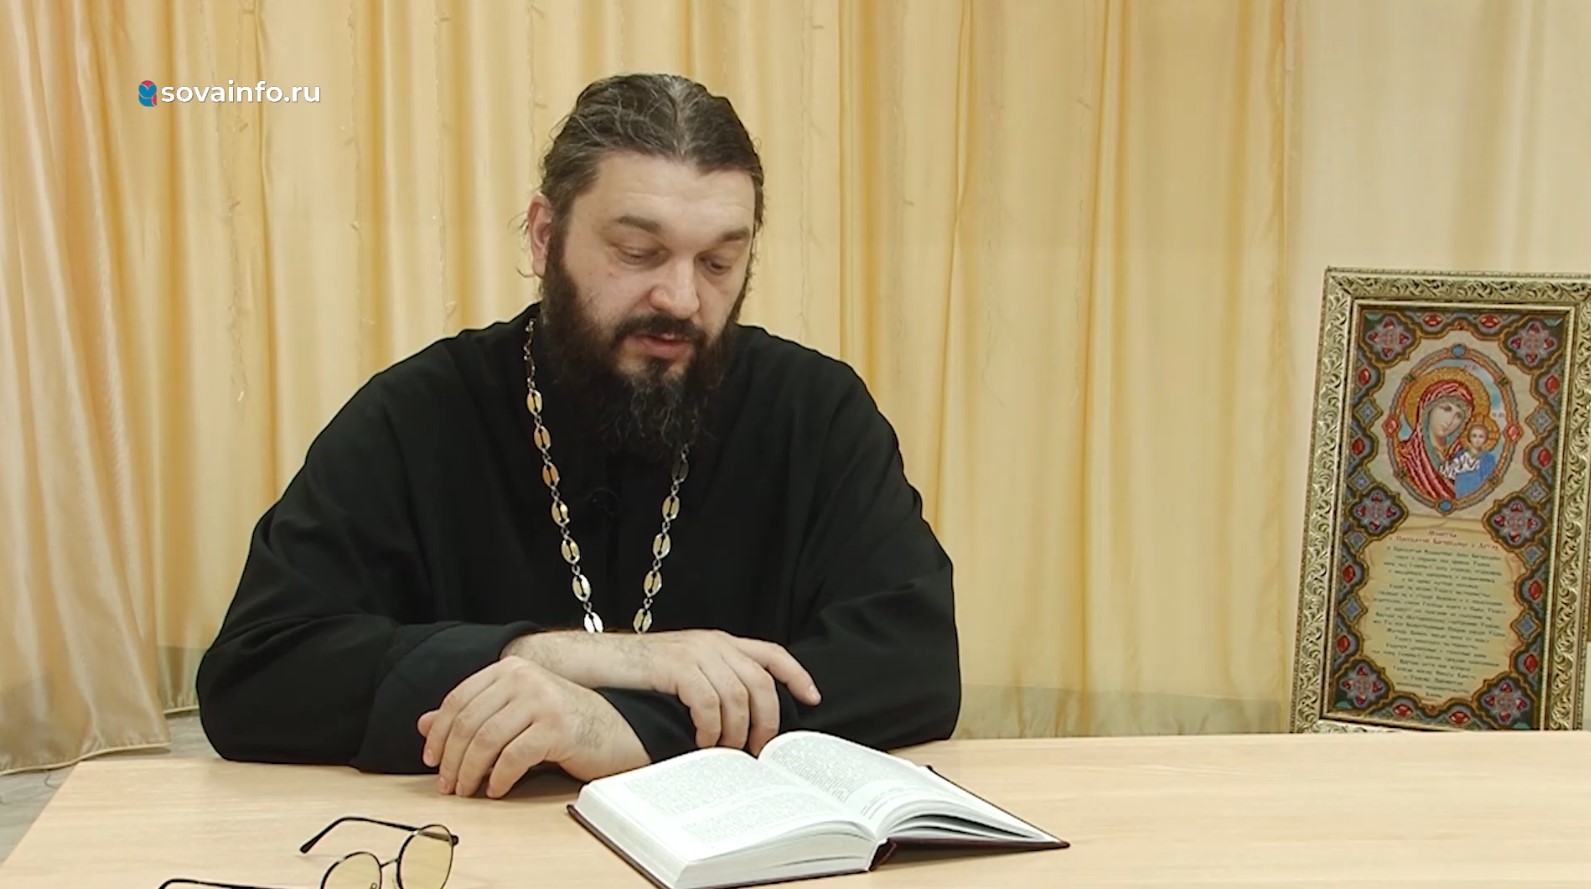 Беседа с отцом Андреем Полевым о молитве. Путь паломника